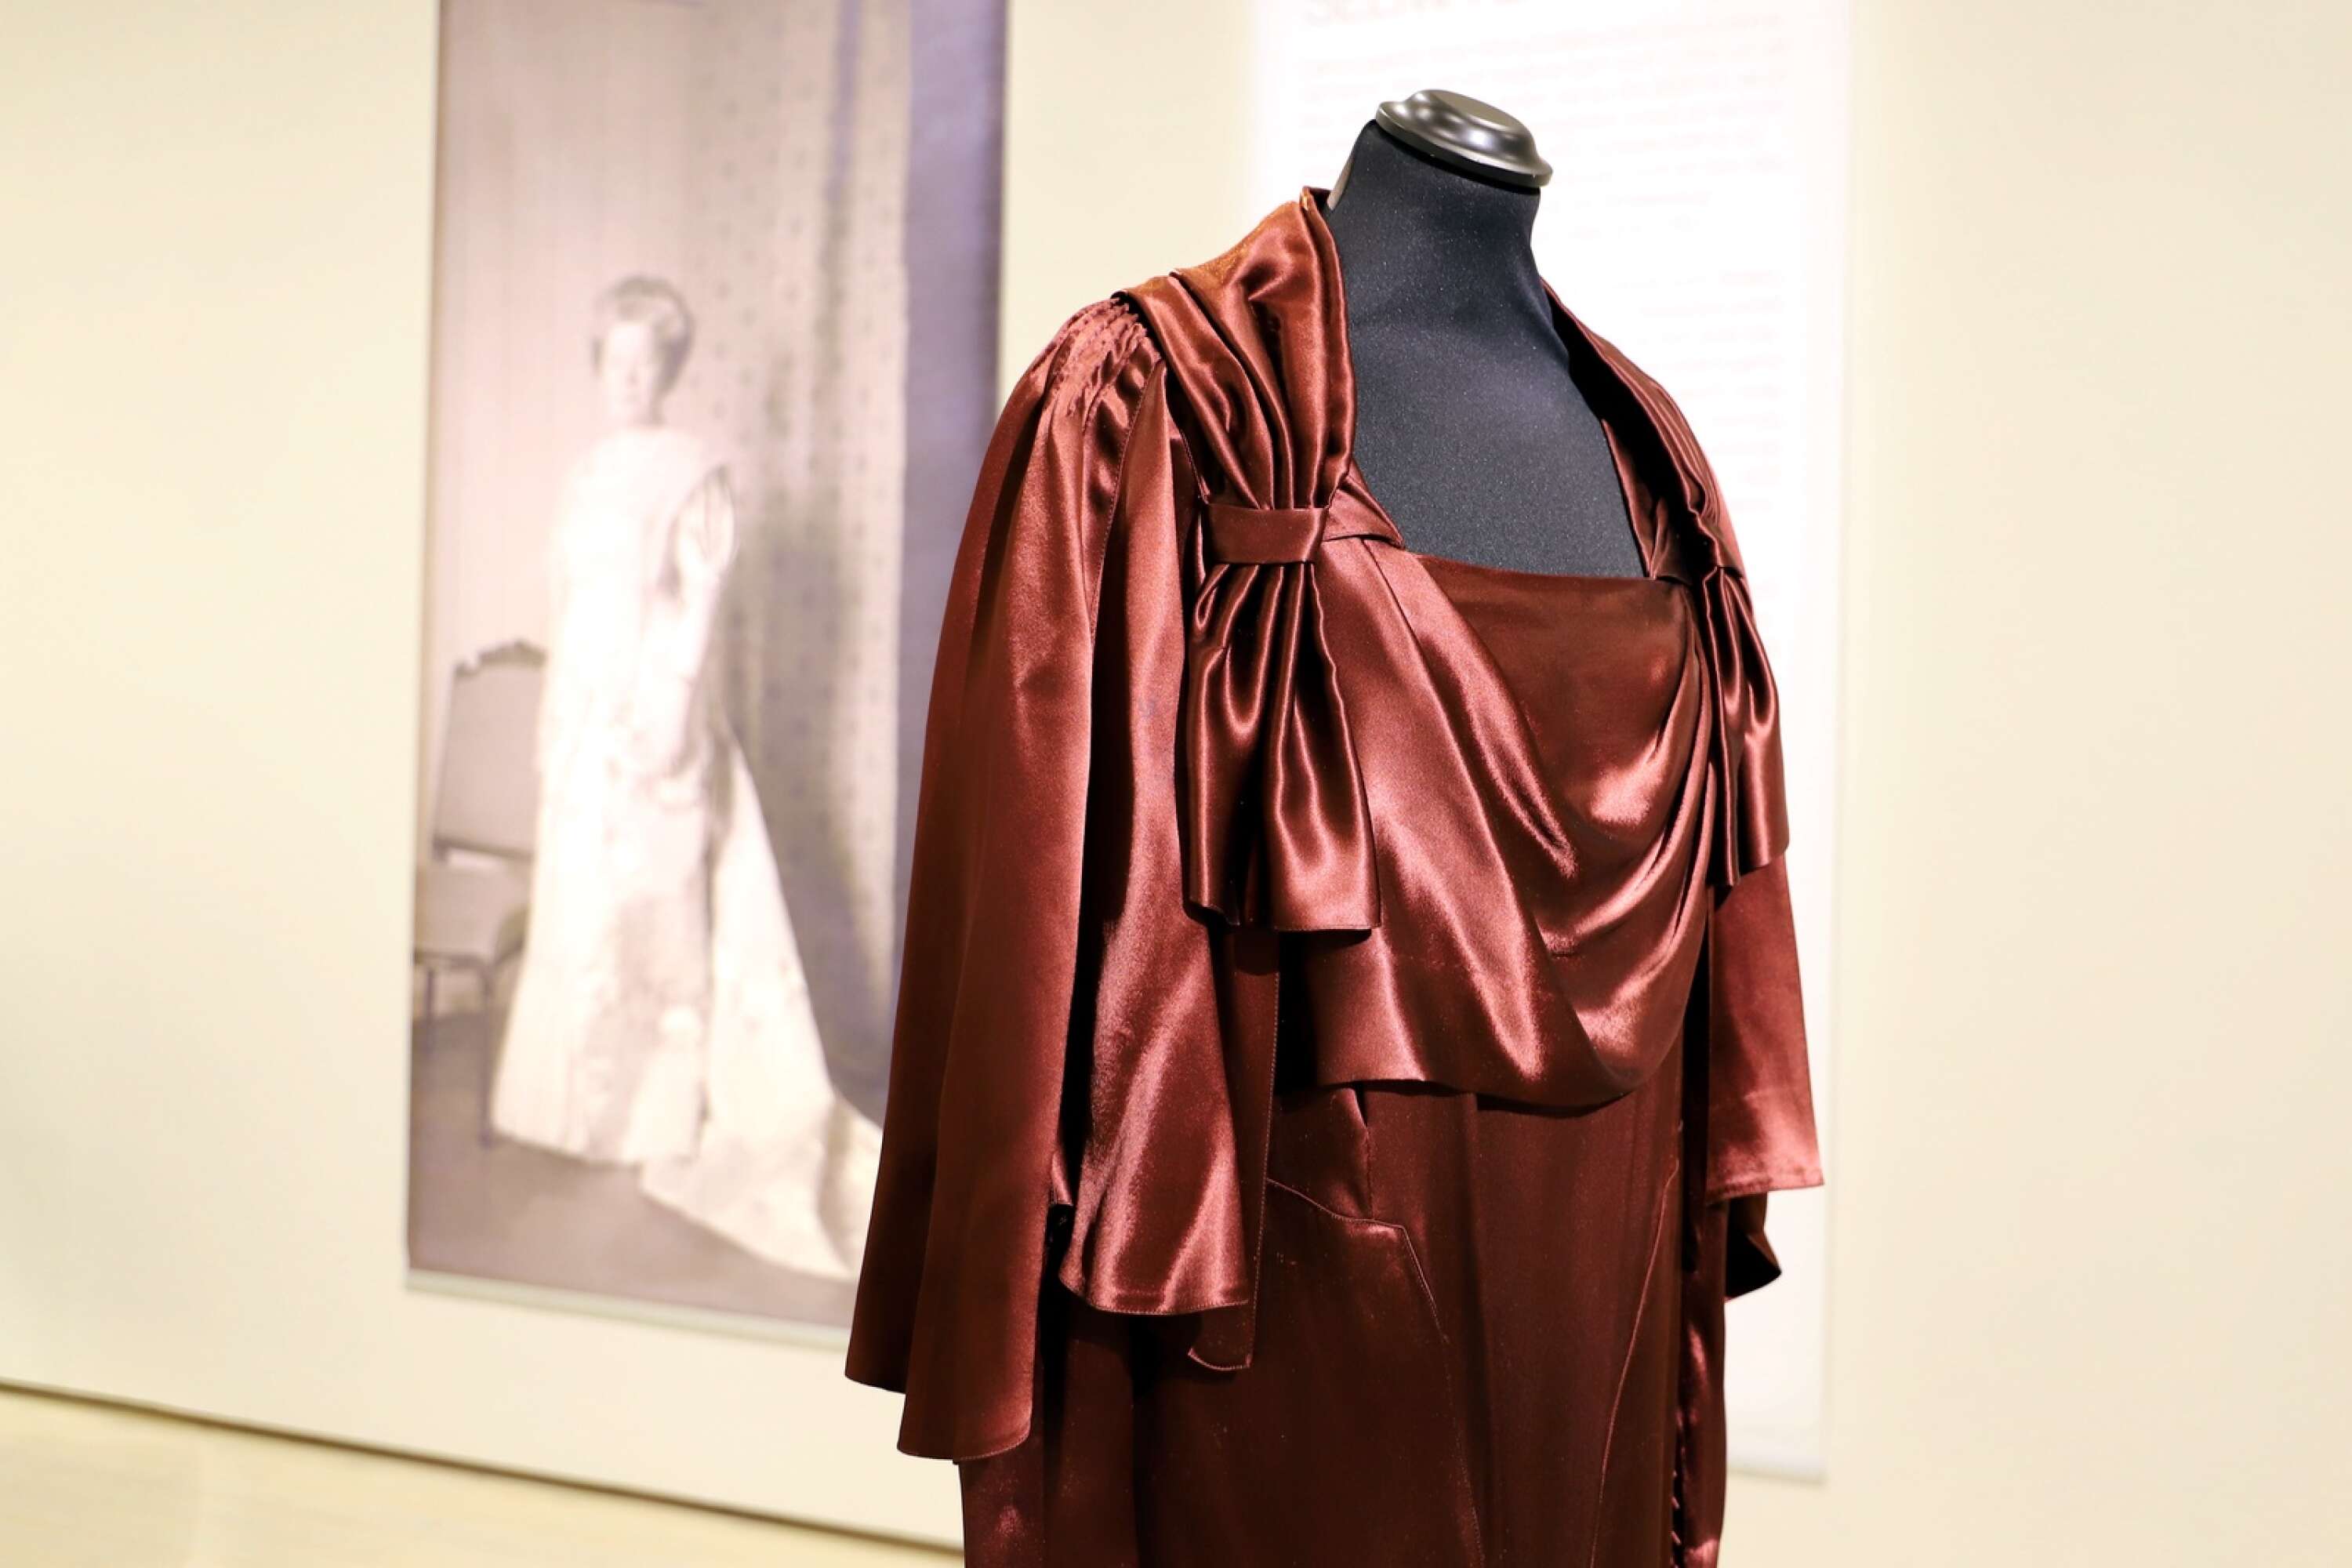 En av Selma Lagerlöfs klänningar, designad av Augusta Lundin, ”som man kan kalla den tidens Pär Engsheden”, säger Lena Örtlund.